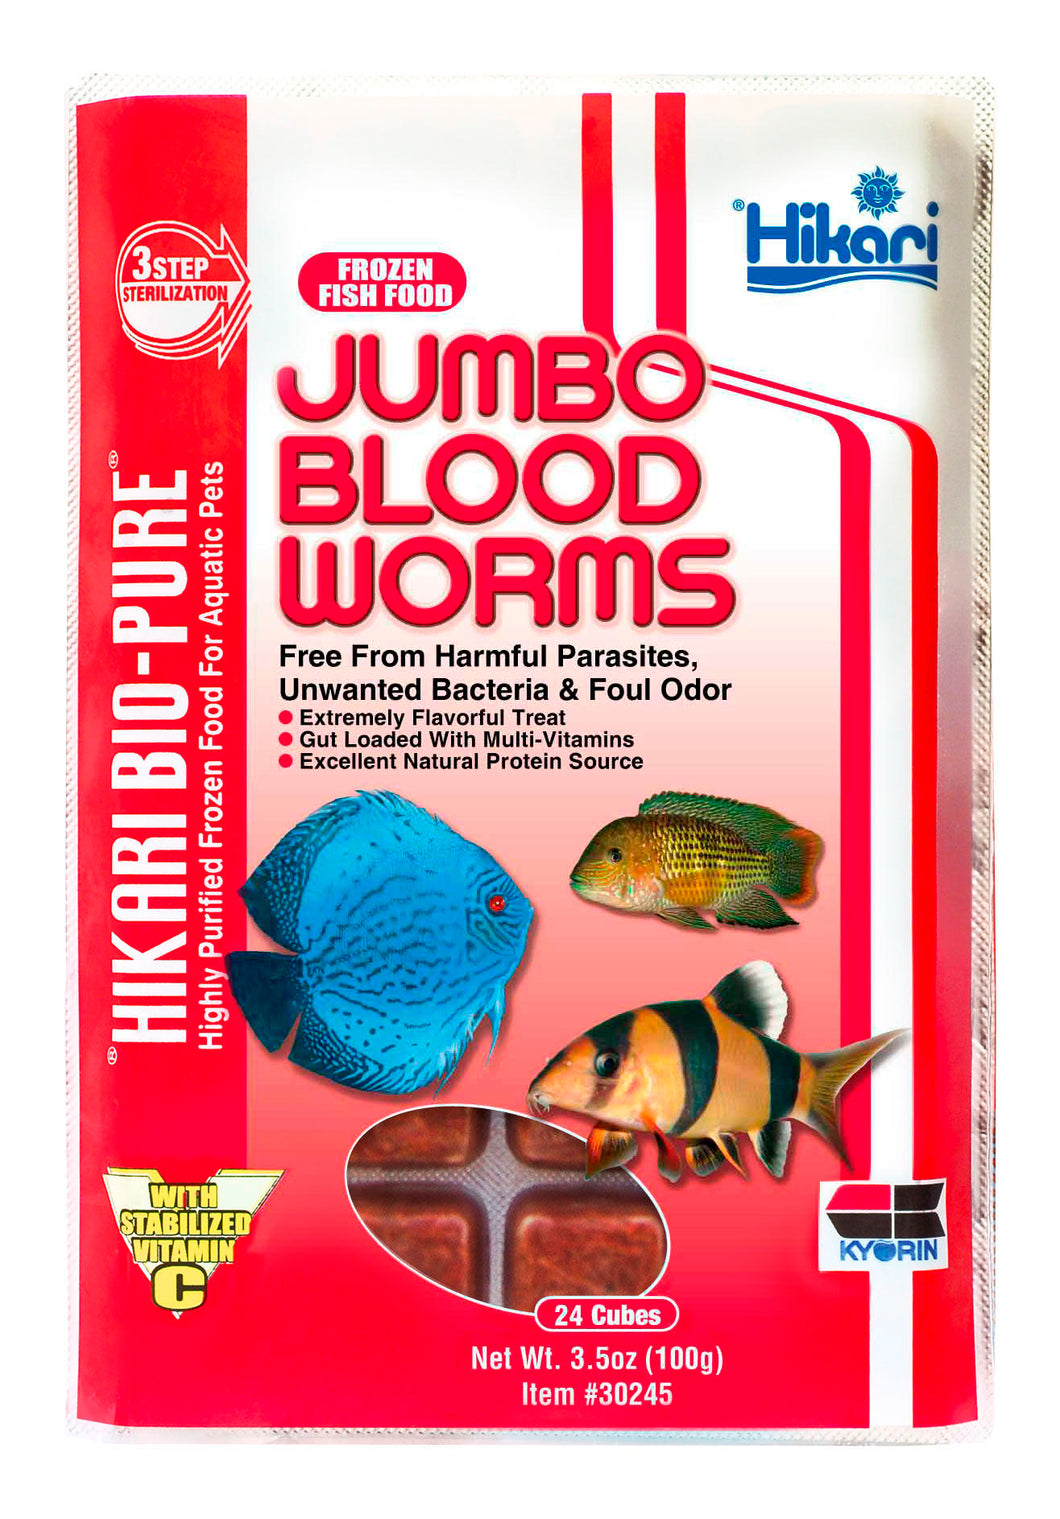 Hikari Frozen Jumbo Blood Worms